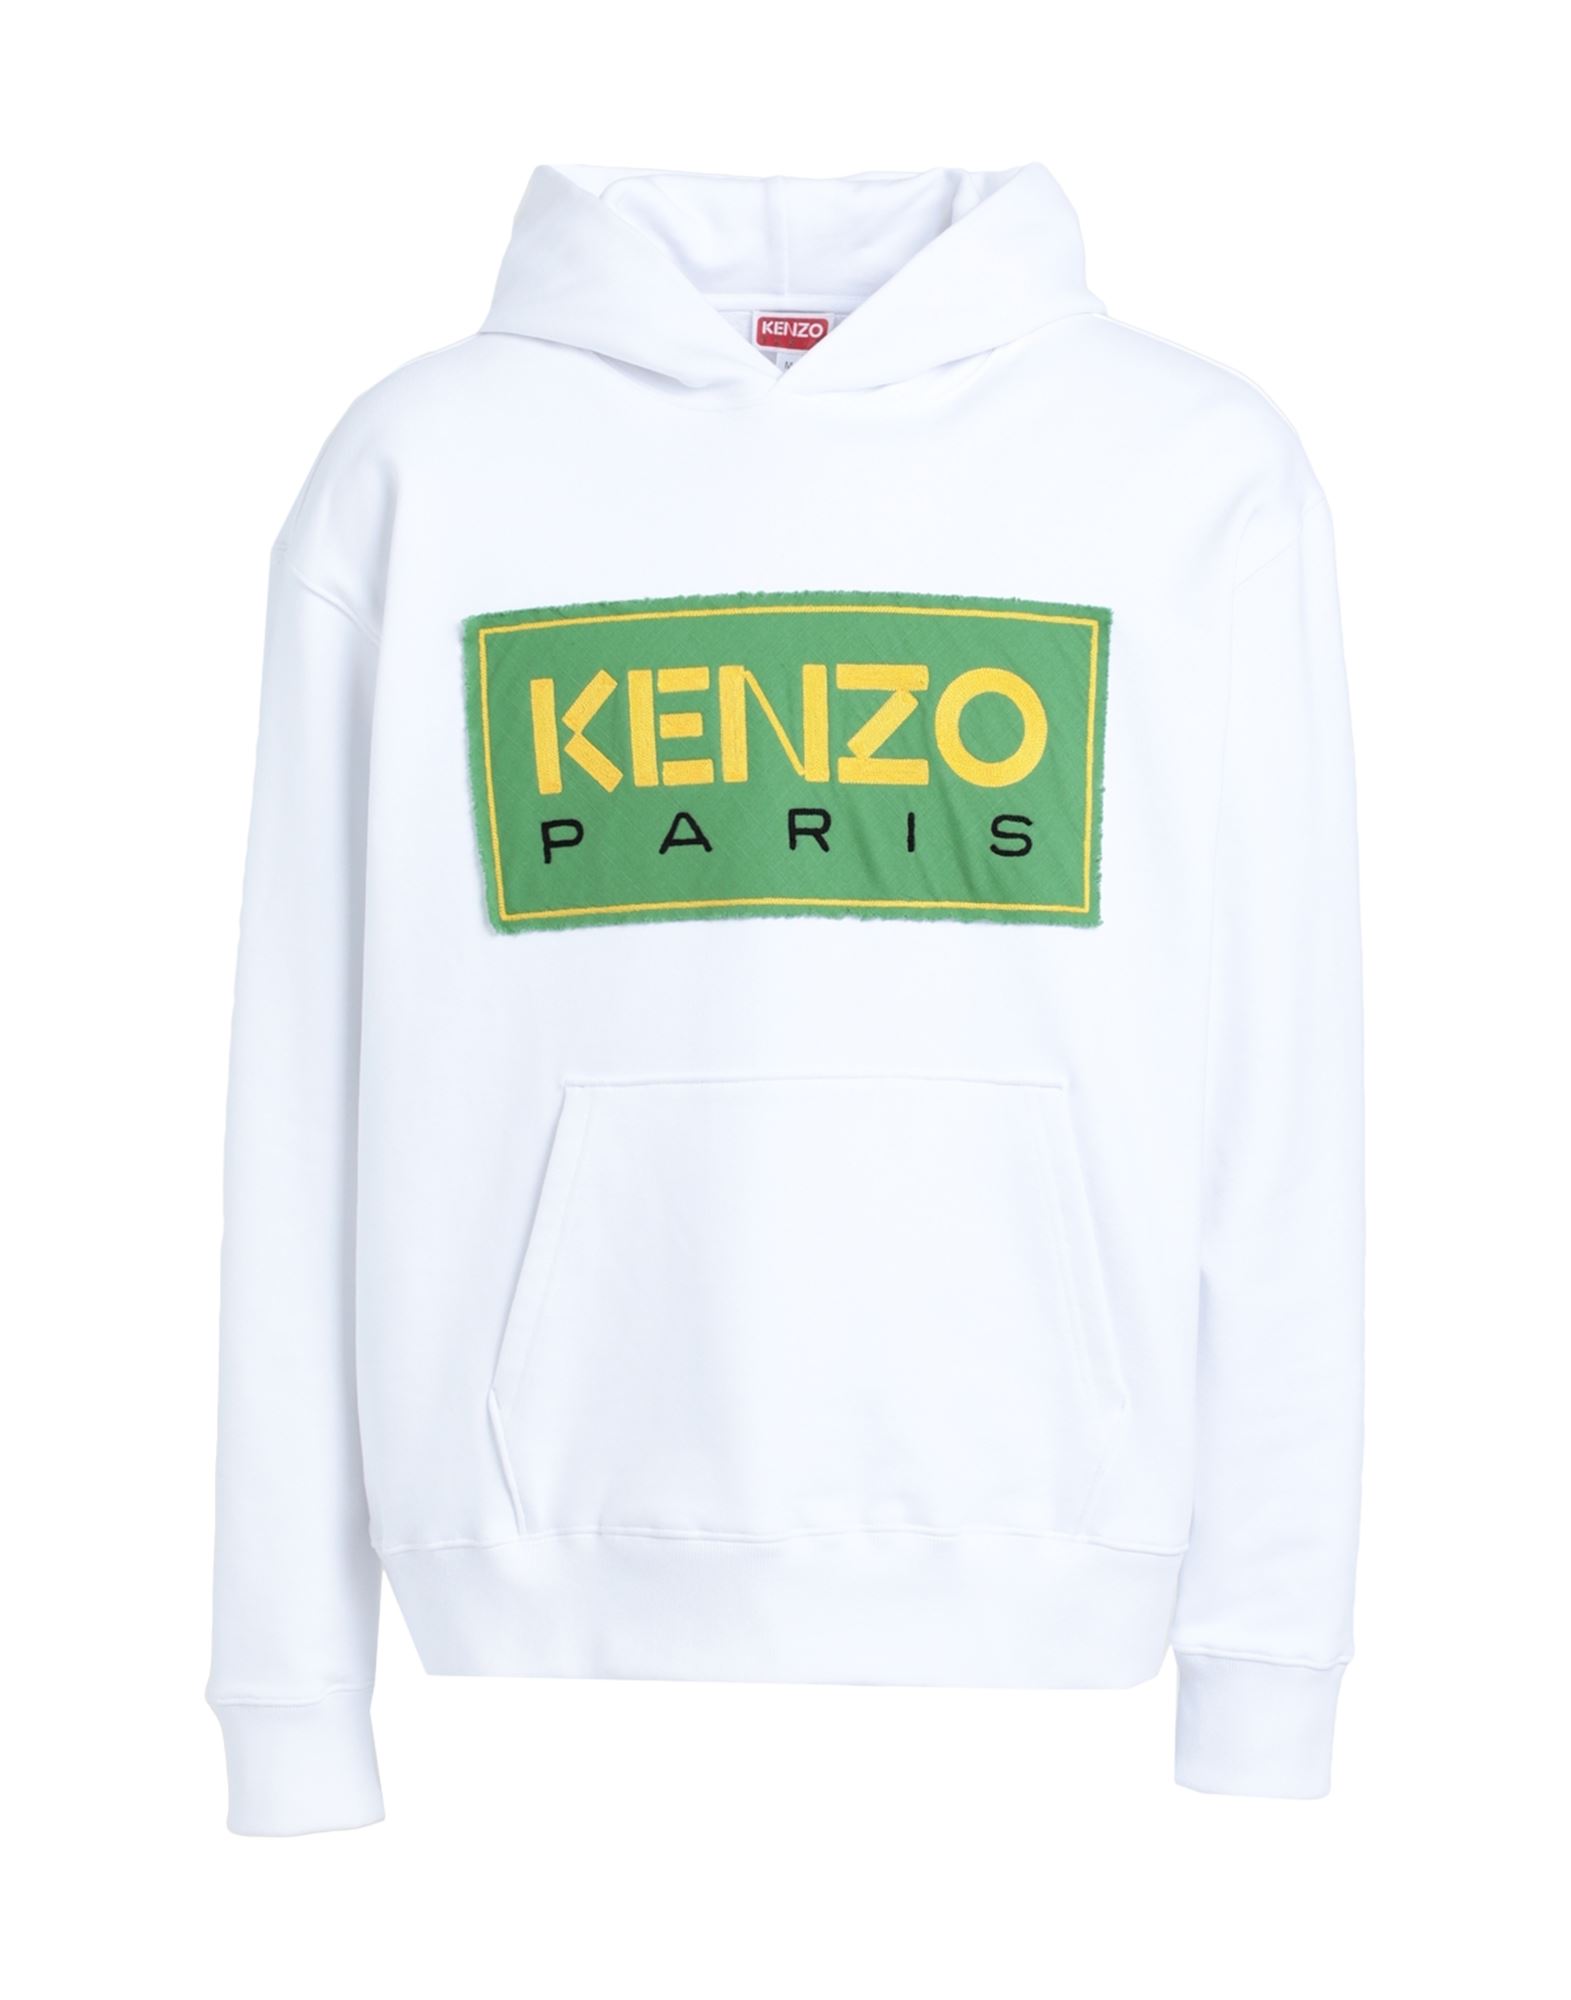 KENZO KENZO MAN SWEATSHIRT WHITE SIZE XL COTTON, ELASTANE